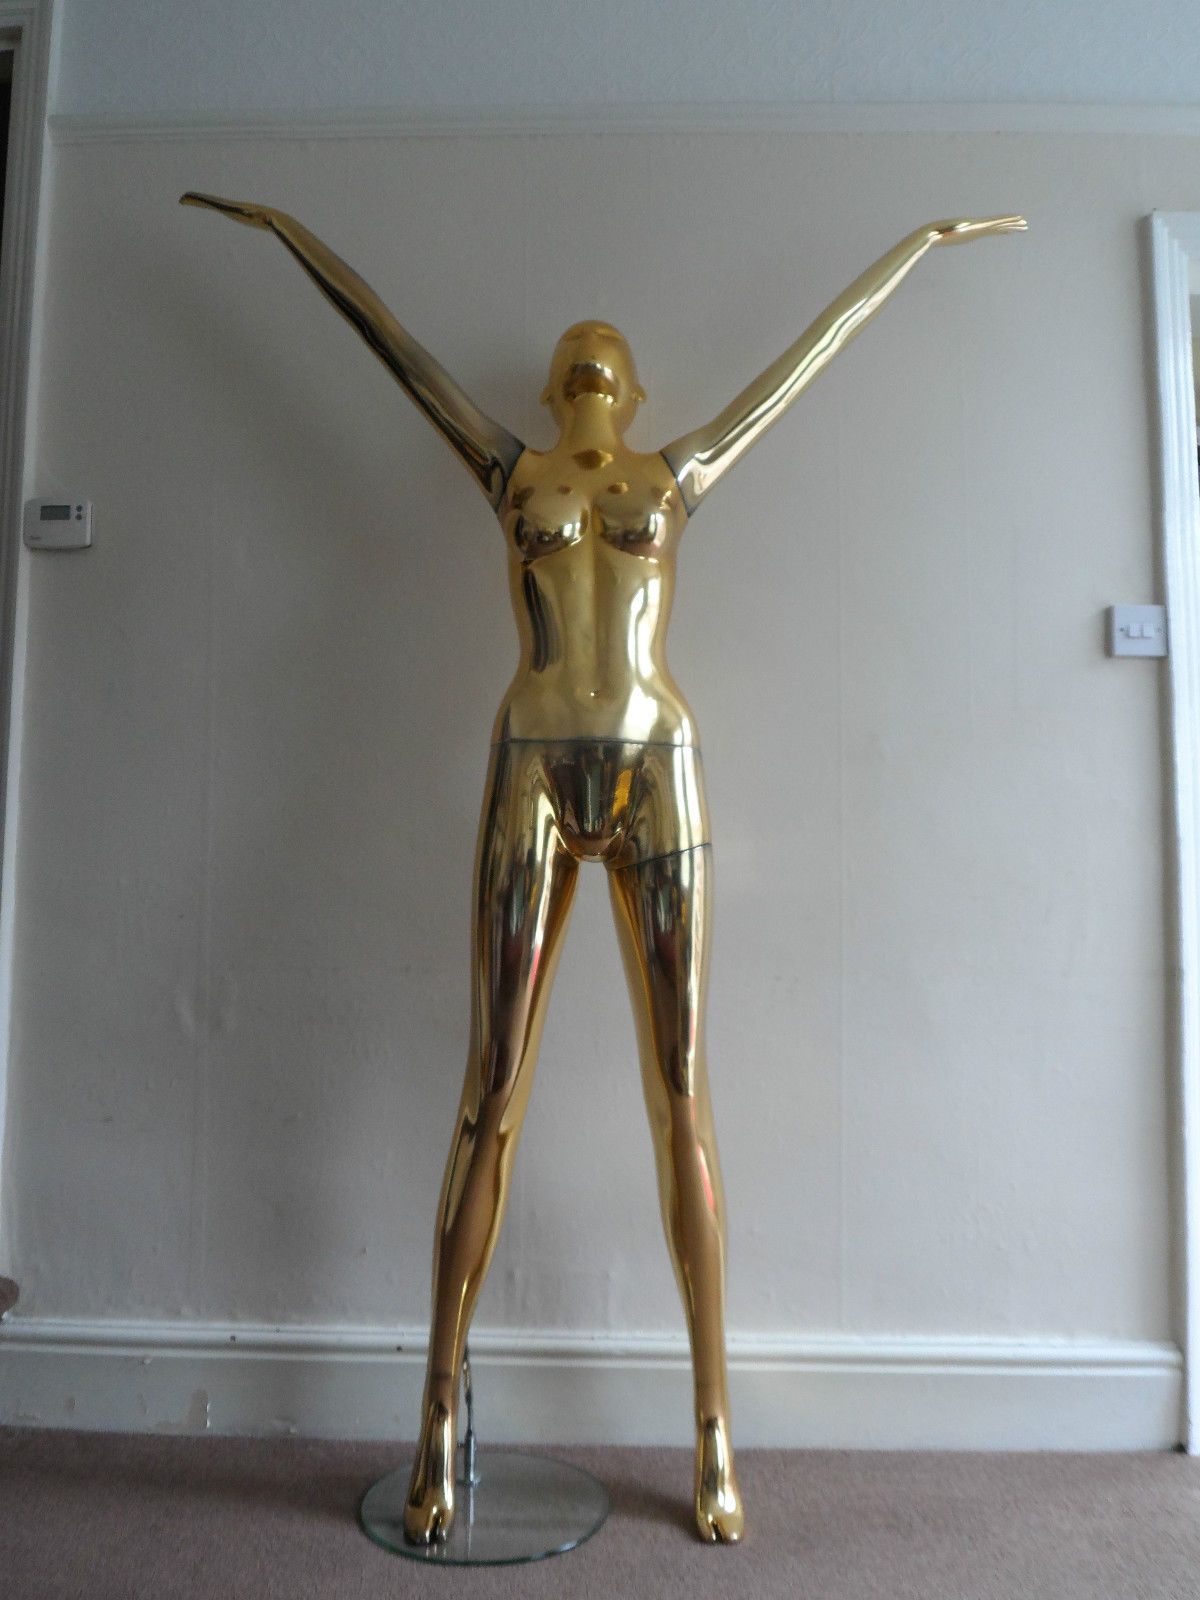 Female Full Body/Figure Standing Gold Mannequin Display Model | eBay ...